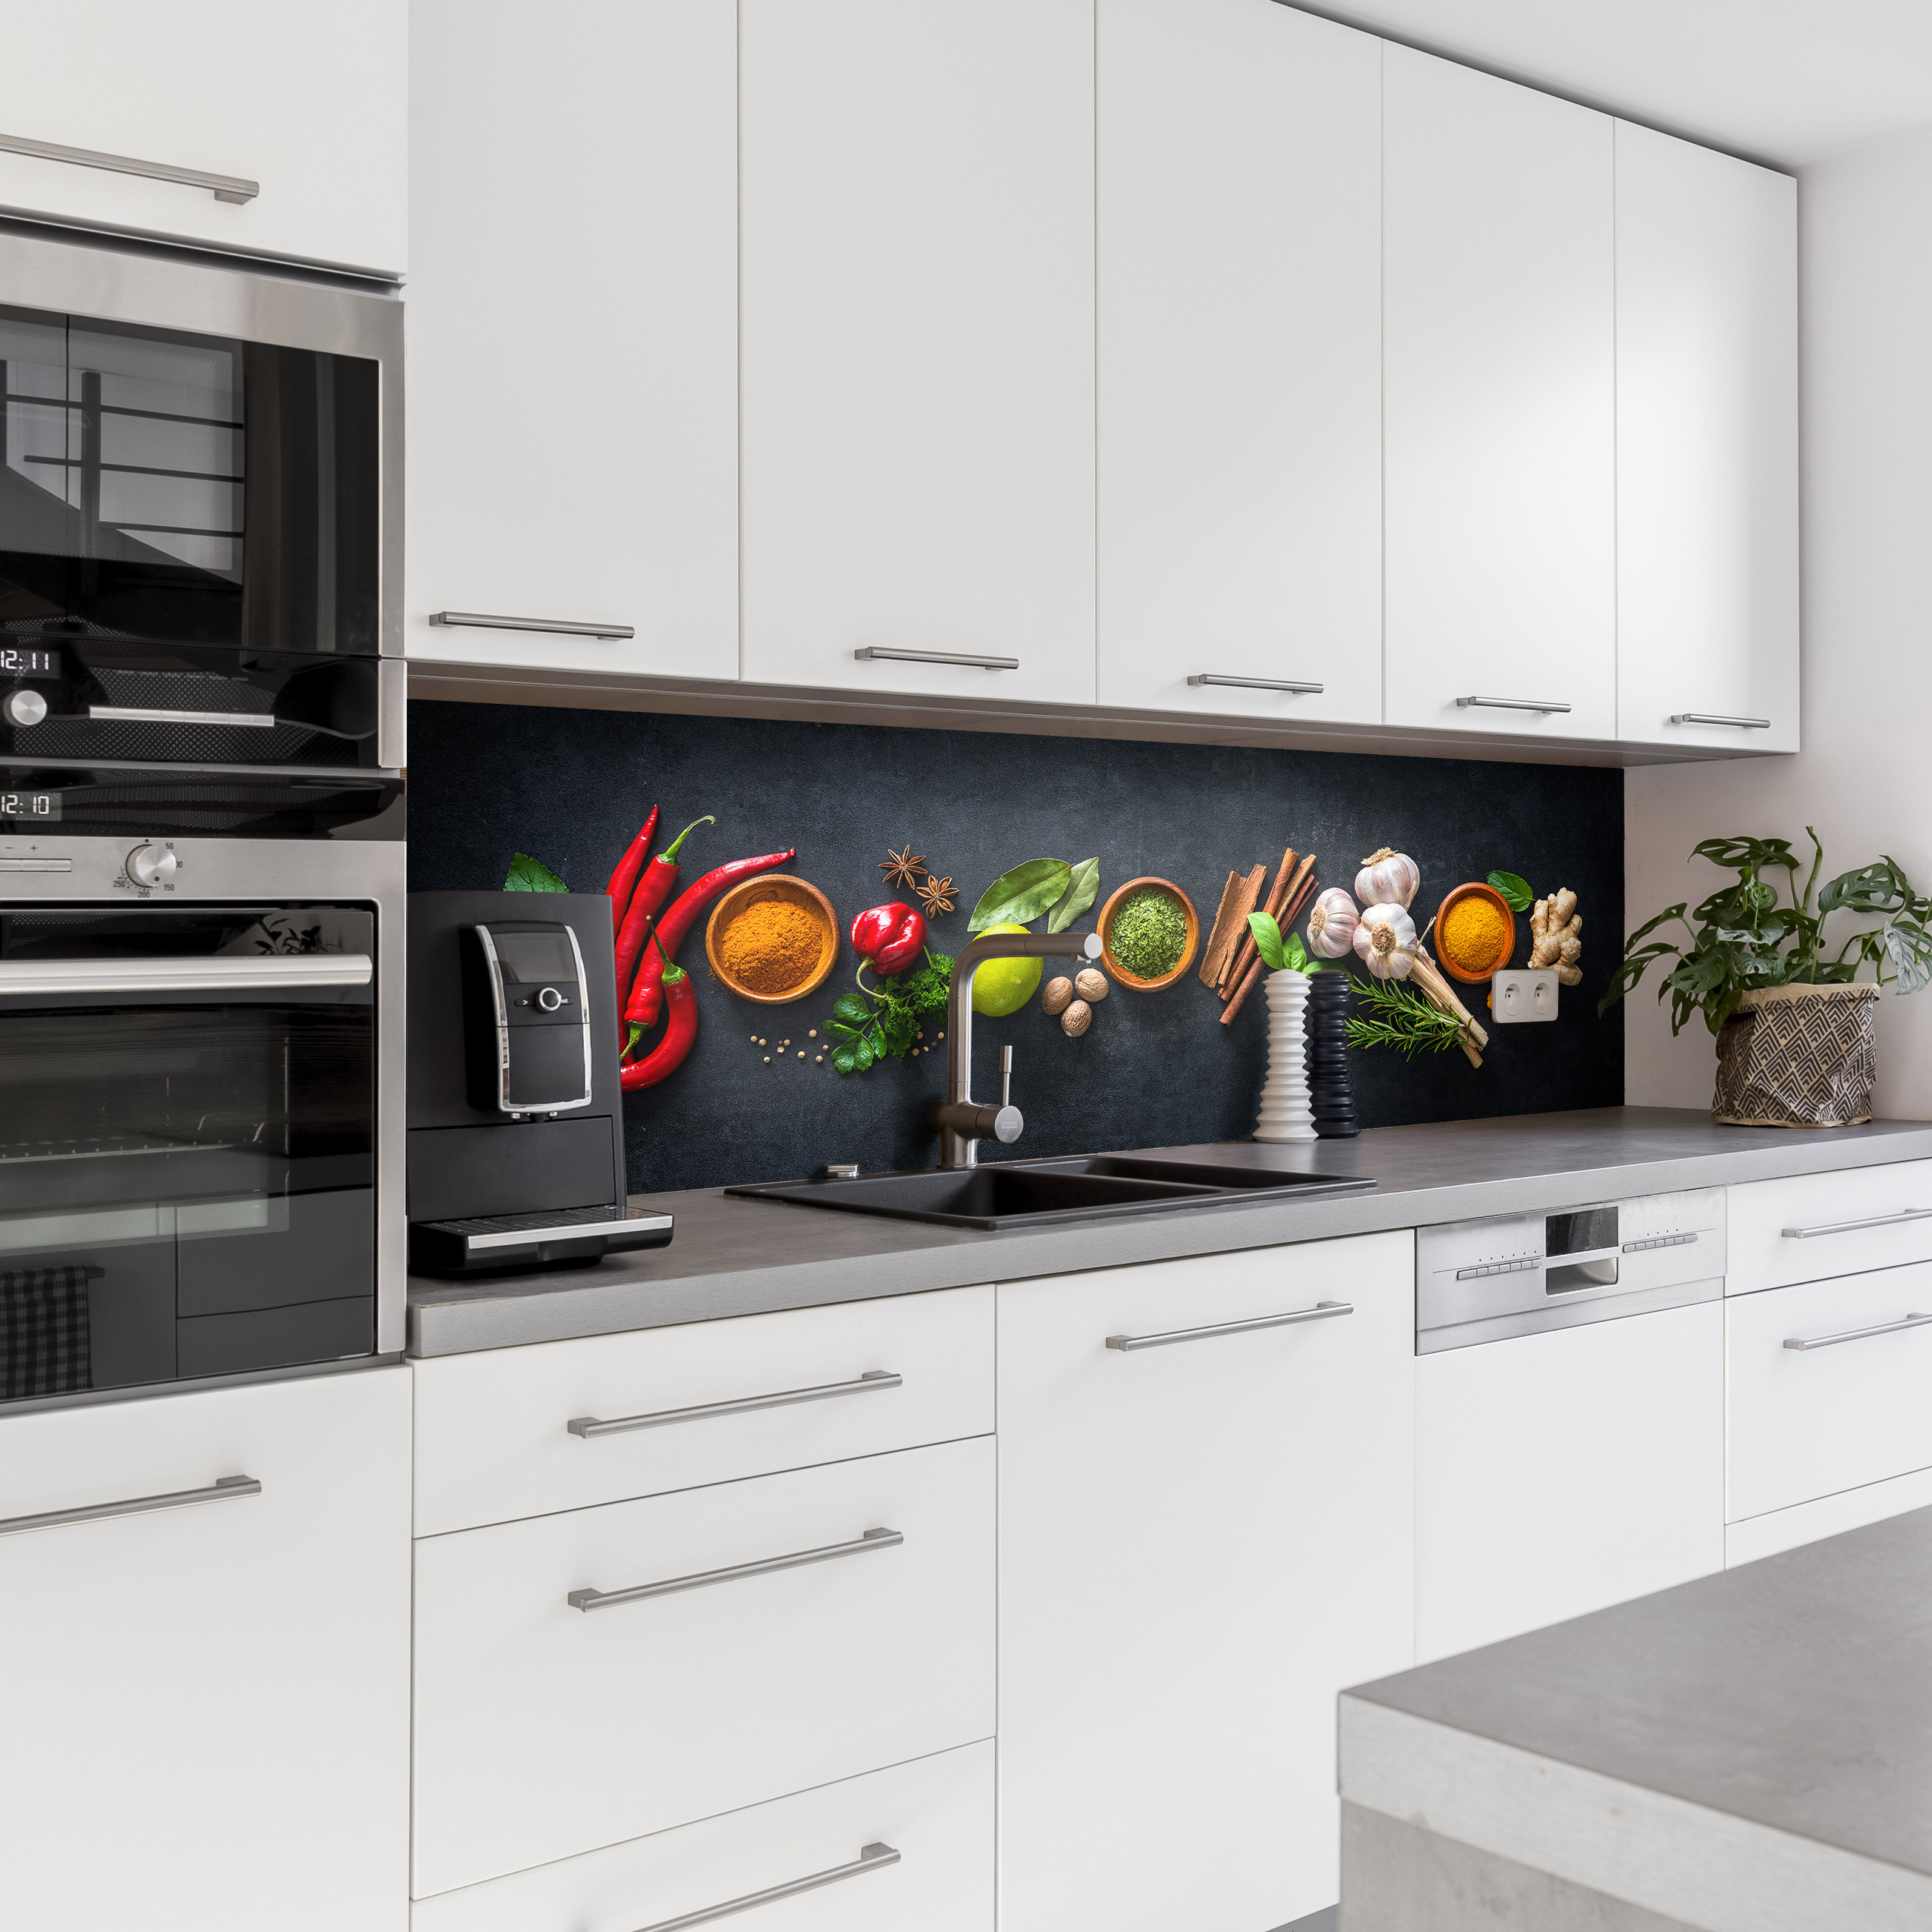 Küchenrückwand mit Gewürze V2 Motiv als Fliesenersatz und Spritzschutz